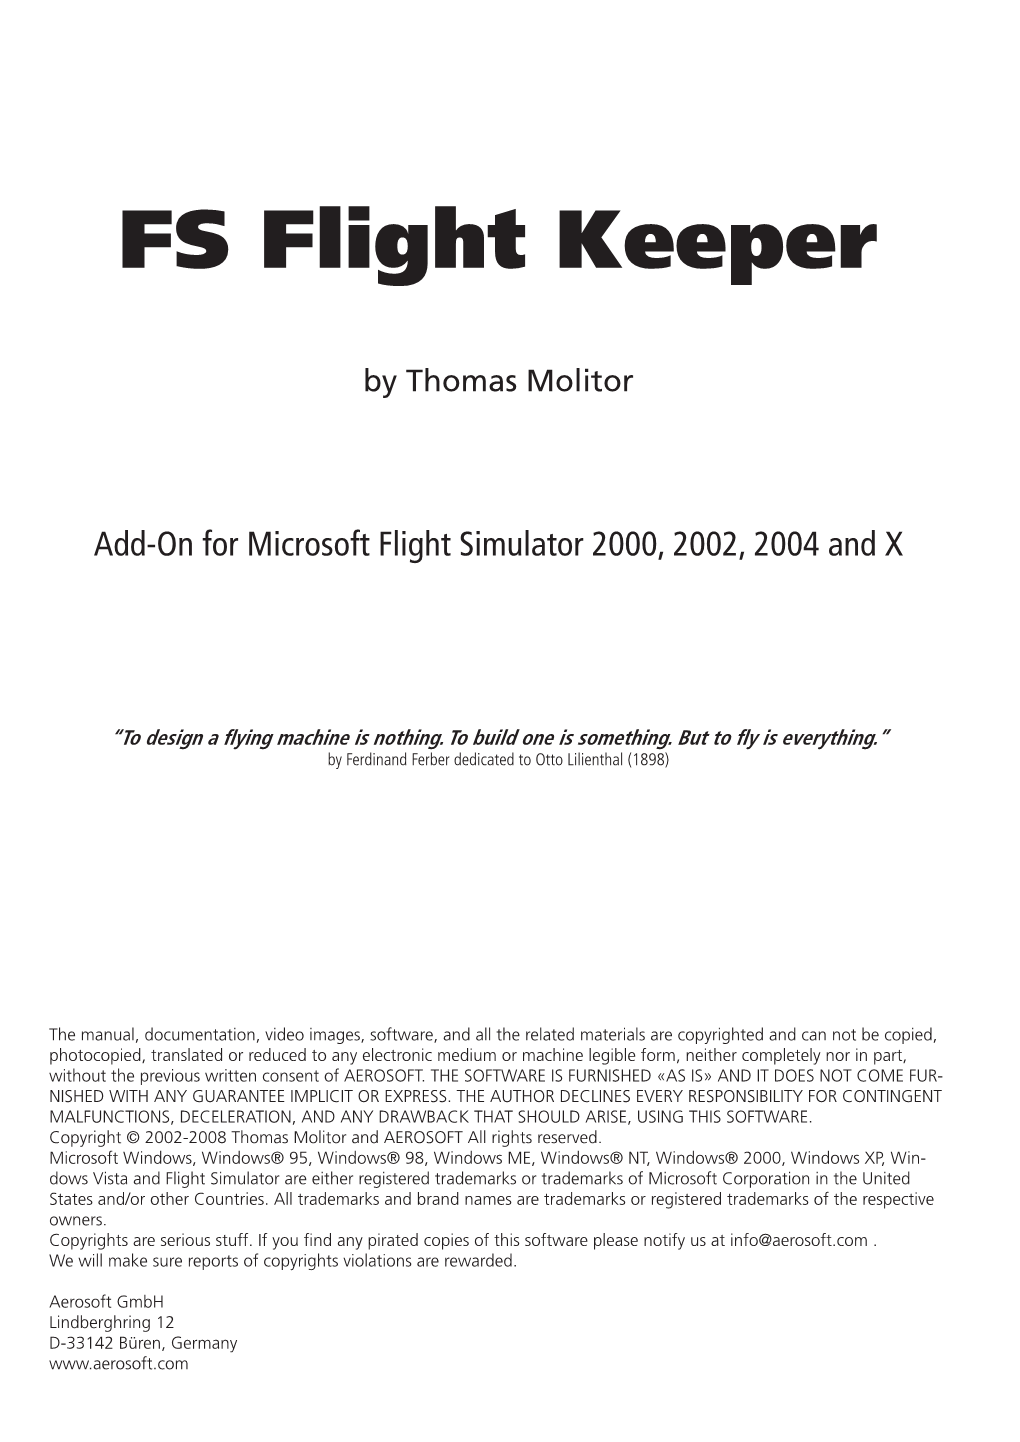 FS Flight Keeper Manual